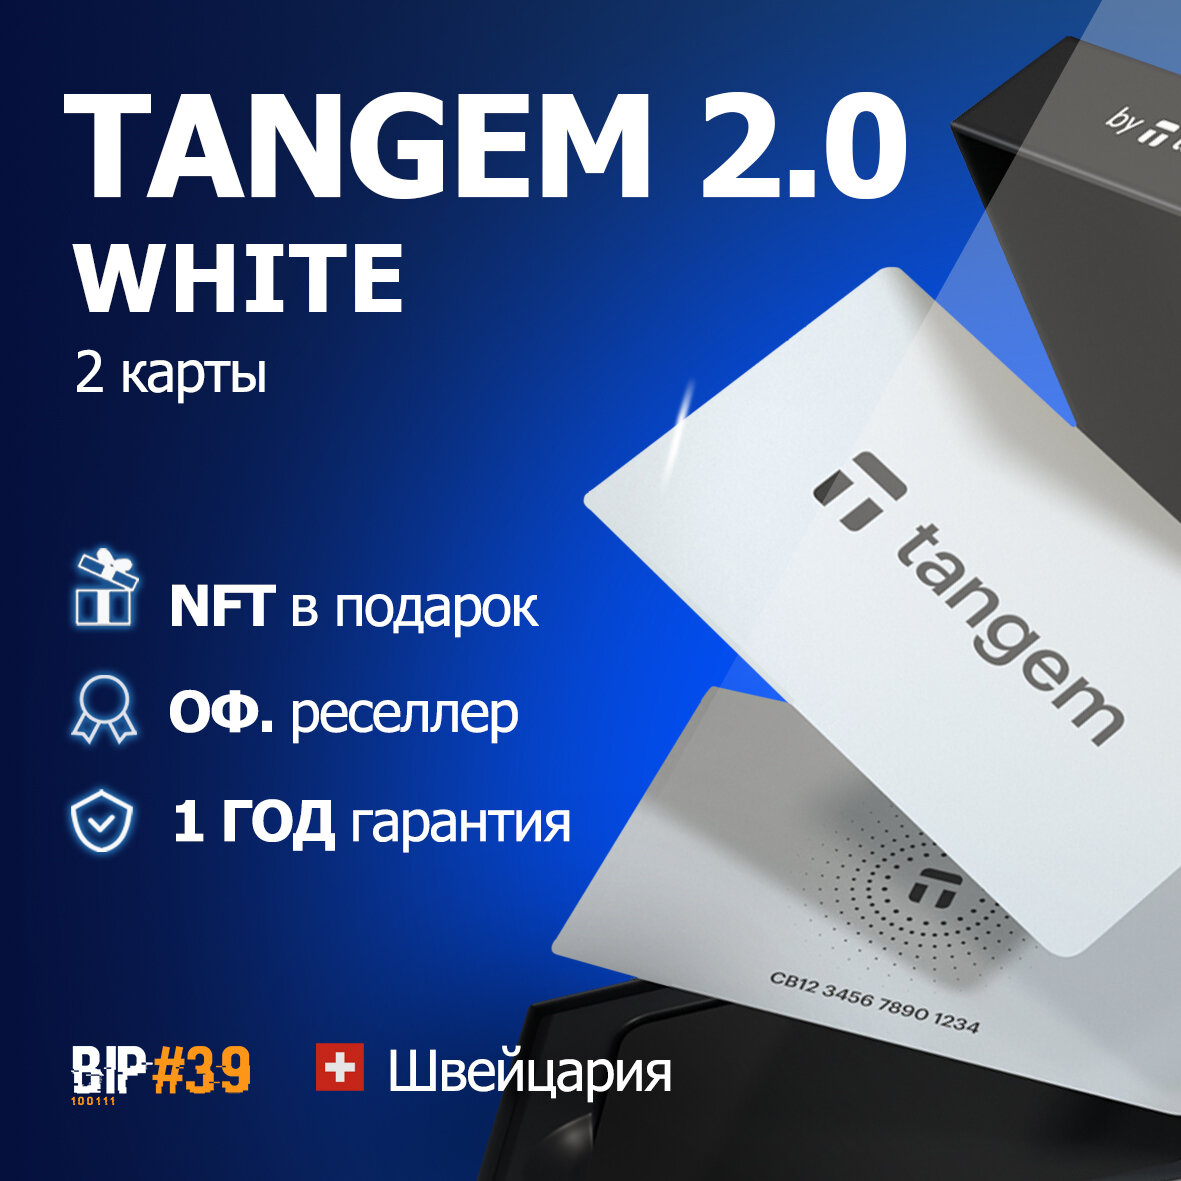 Аппаратный криптокошелек Tangem Wallet 2.0 White из 2 карт - от официального реселлера BIP#39